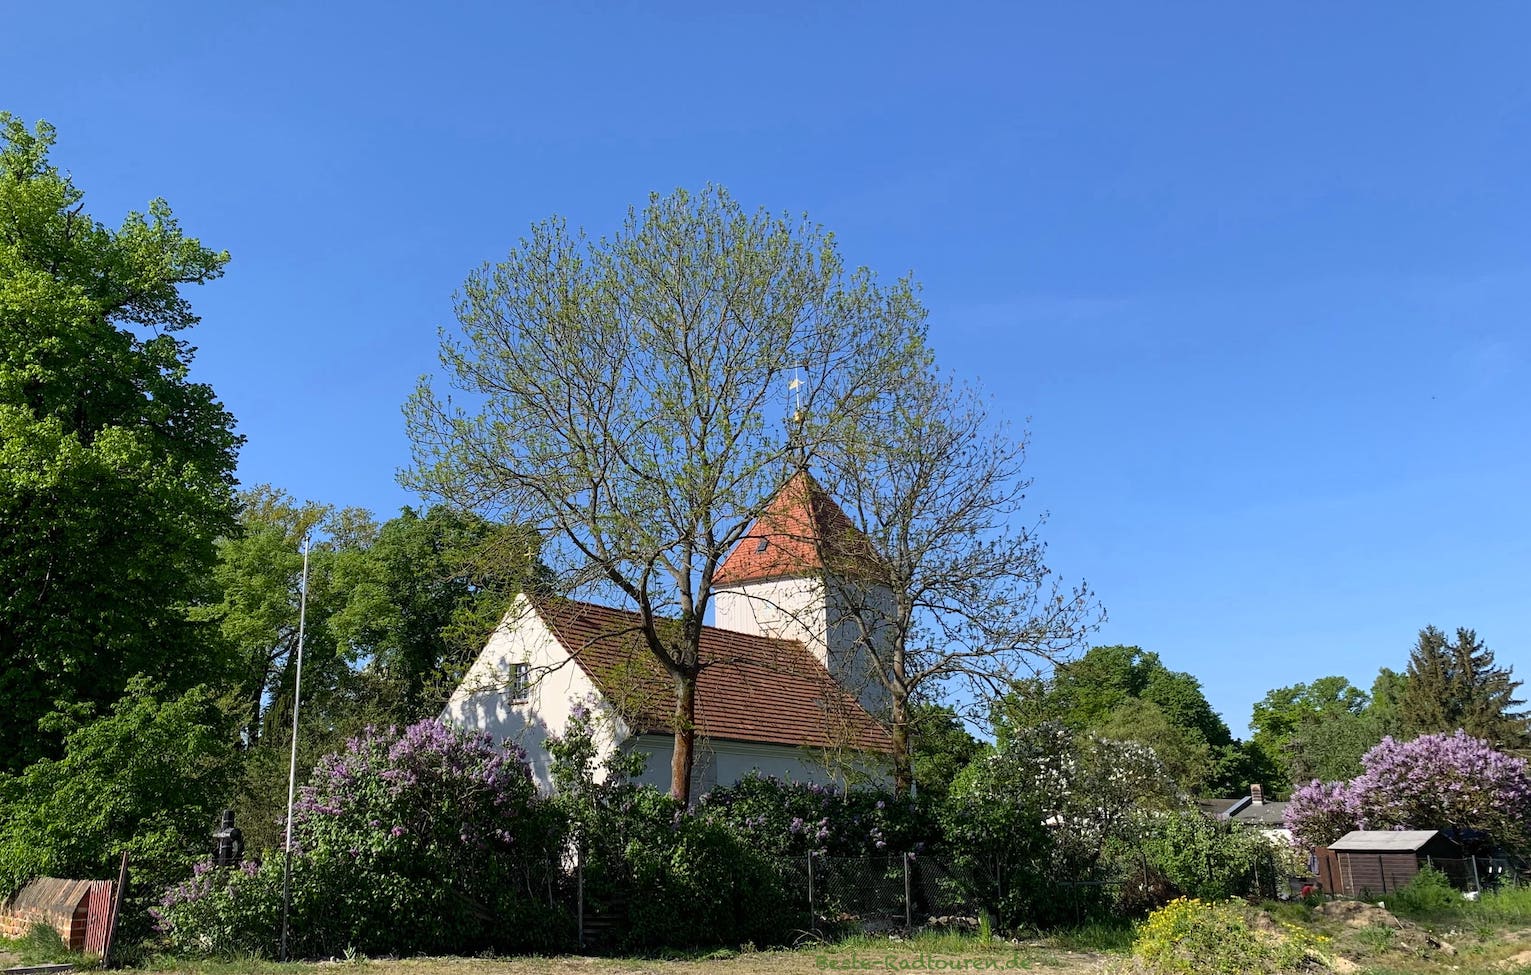 Dorfkirche Alt-Staaken am Nennhauser Damm